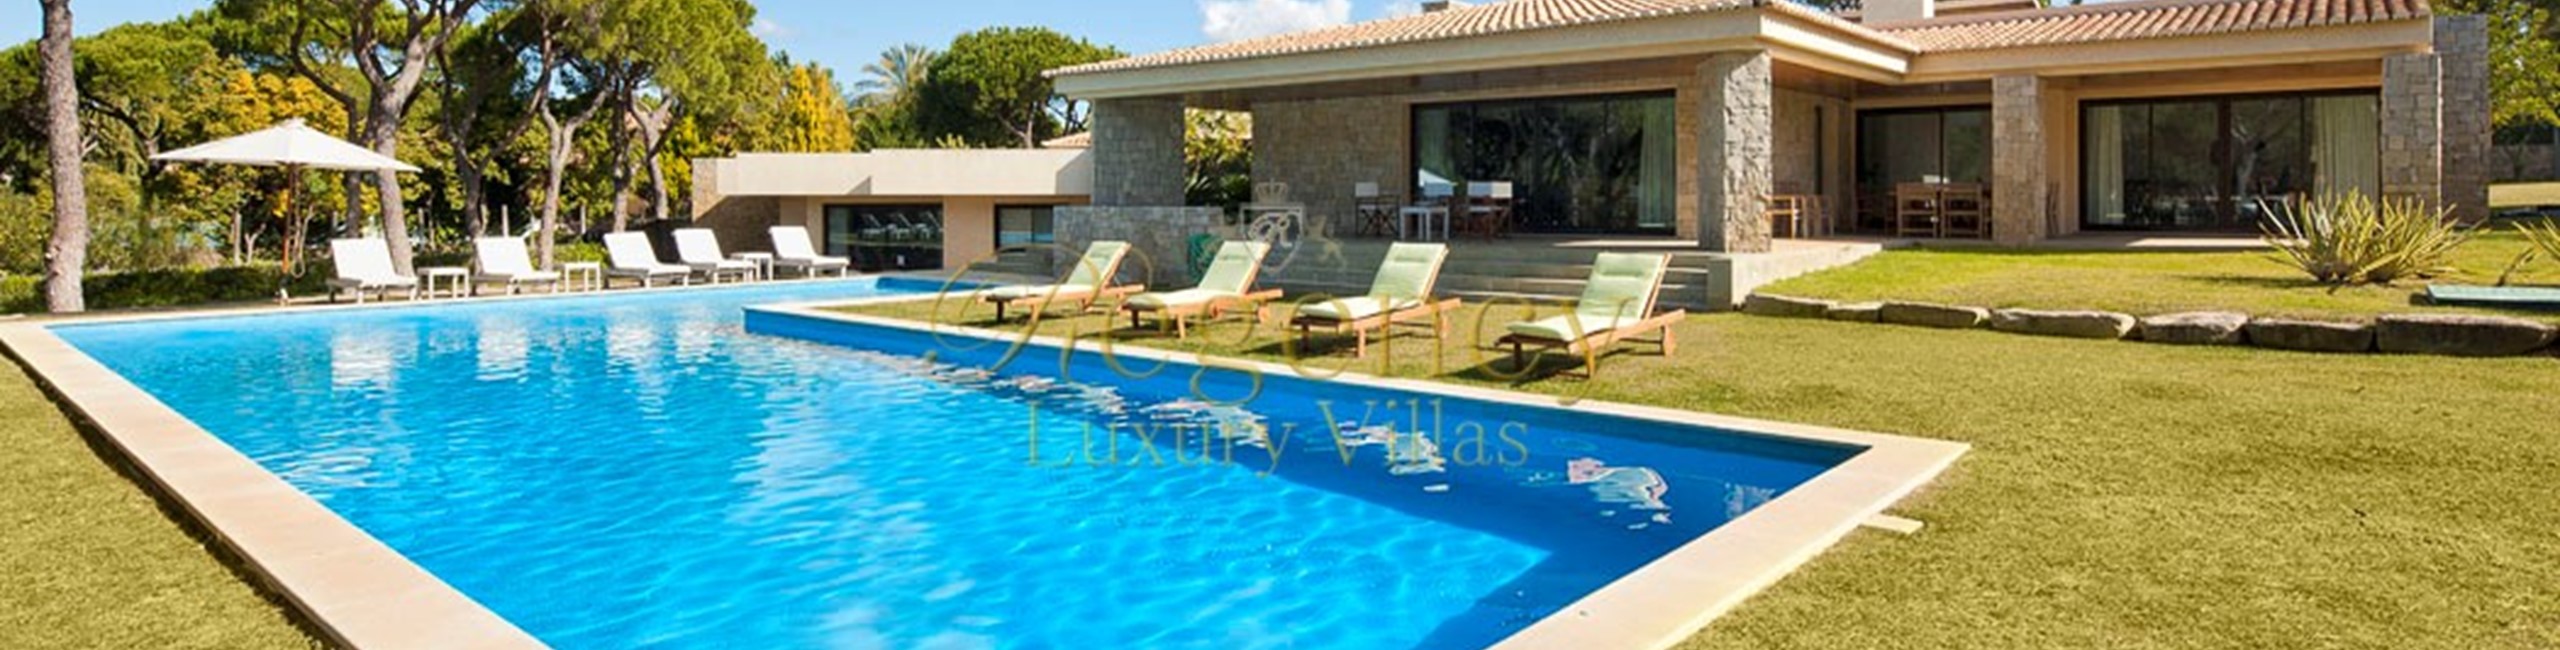 5 Bedroom Villa To Rent In Vilamoura Villa Vermarine Regency Luxury Villas 2